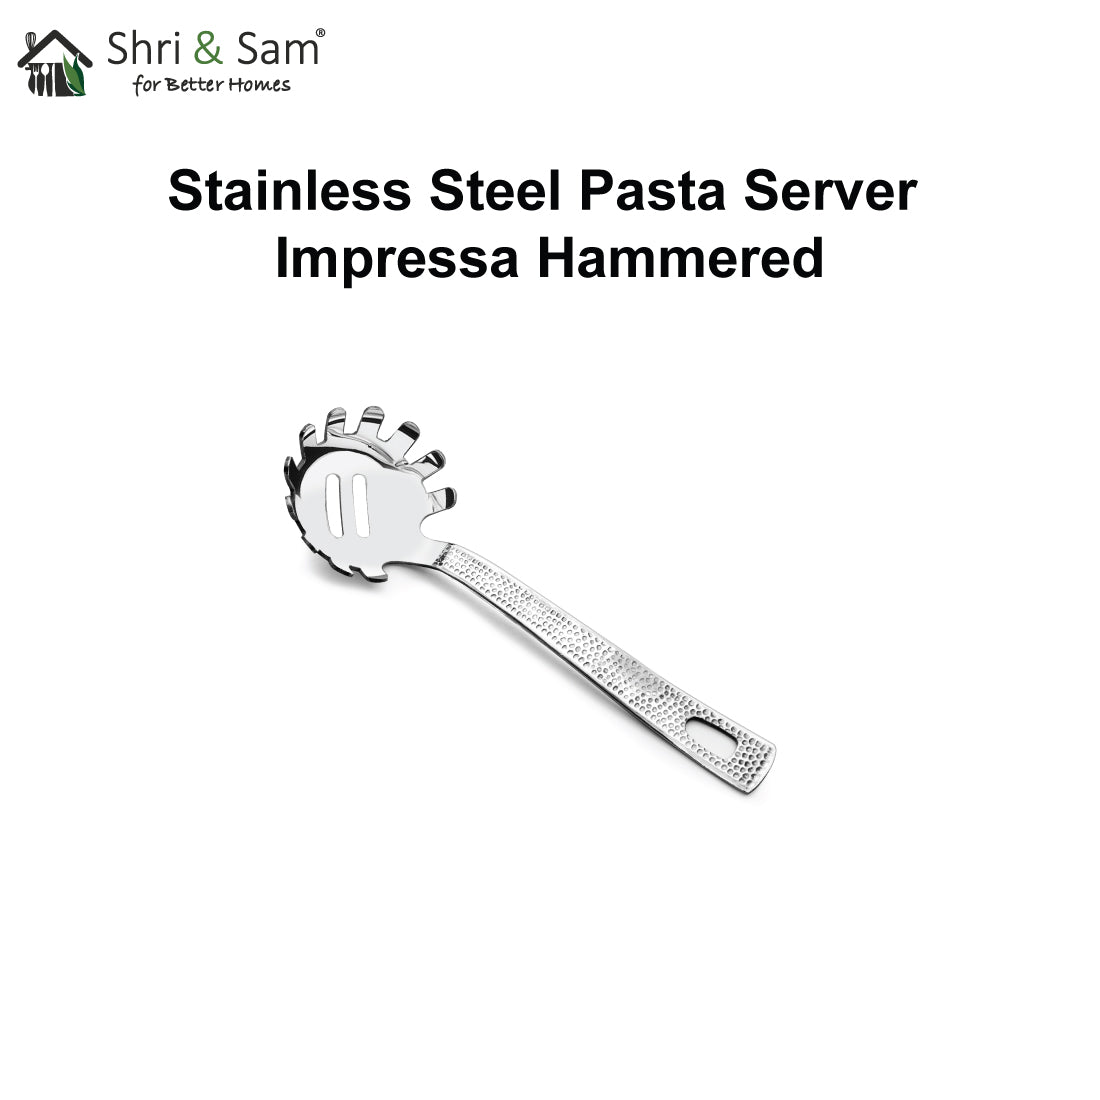 Stainless Steel Pasta Server Impressa Hammered